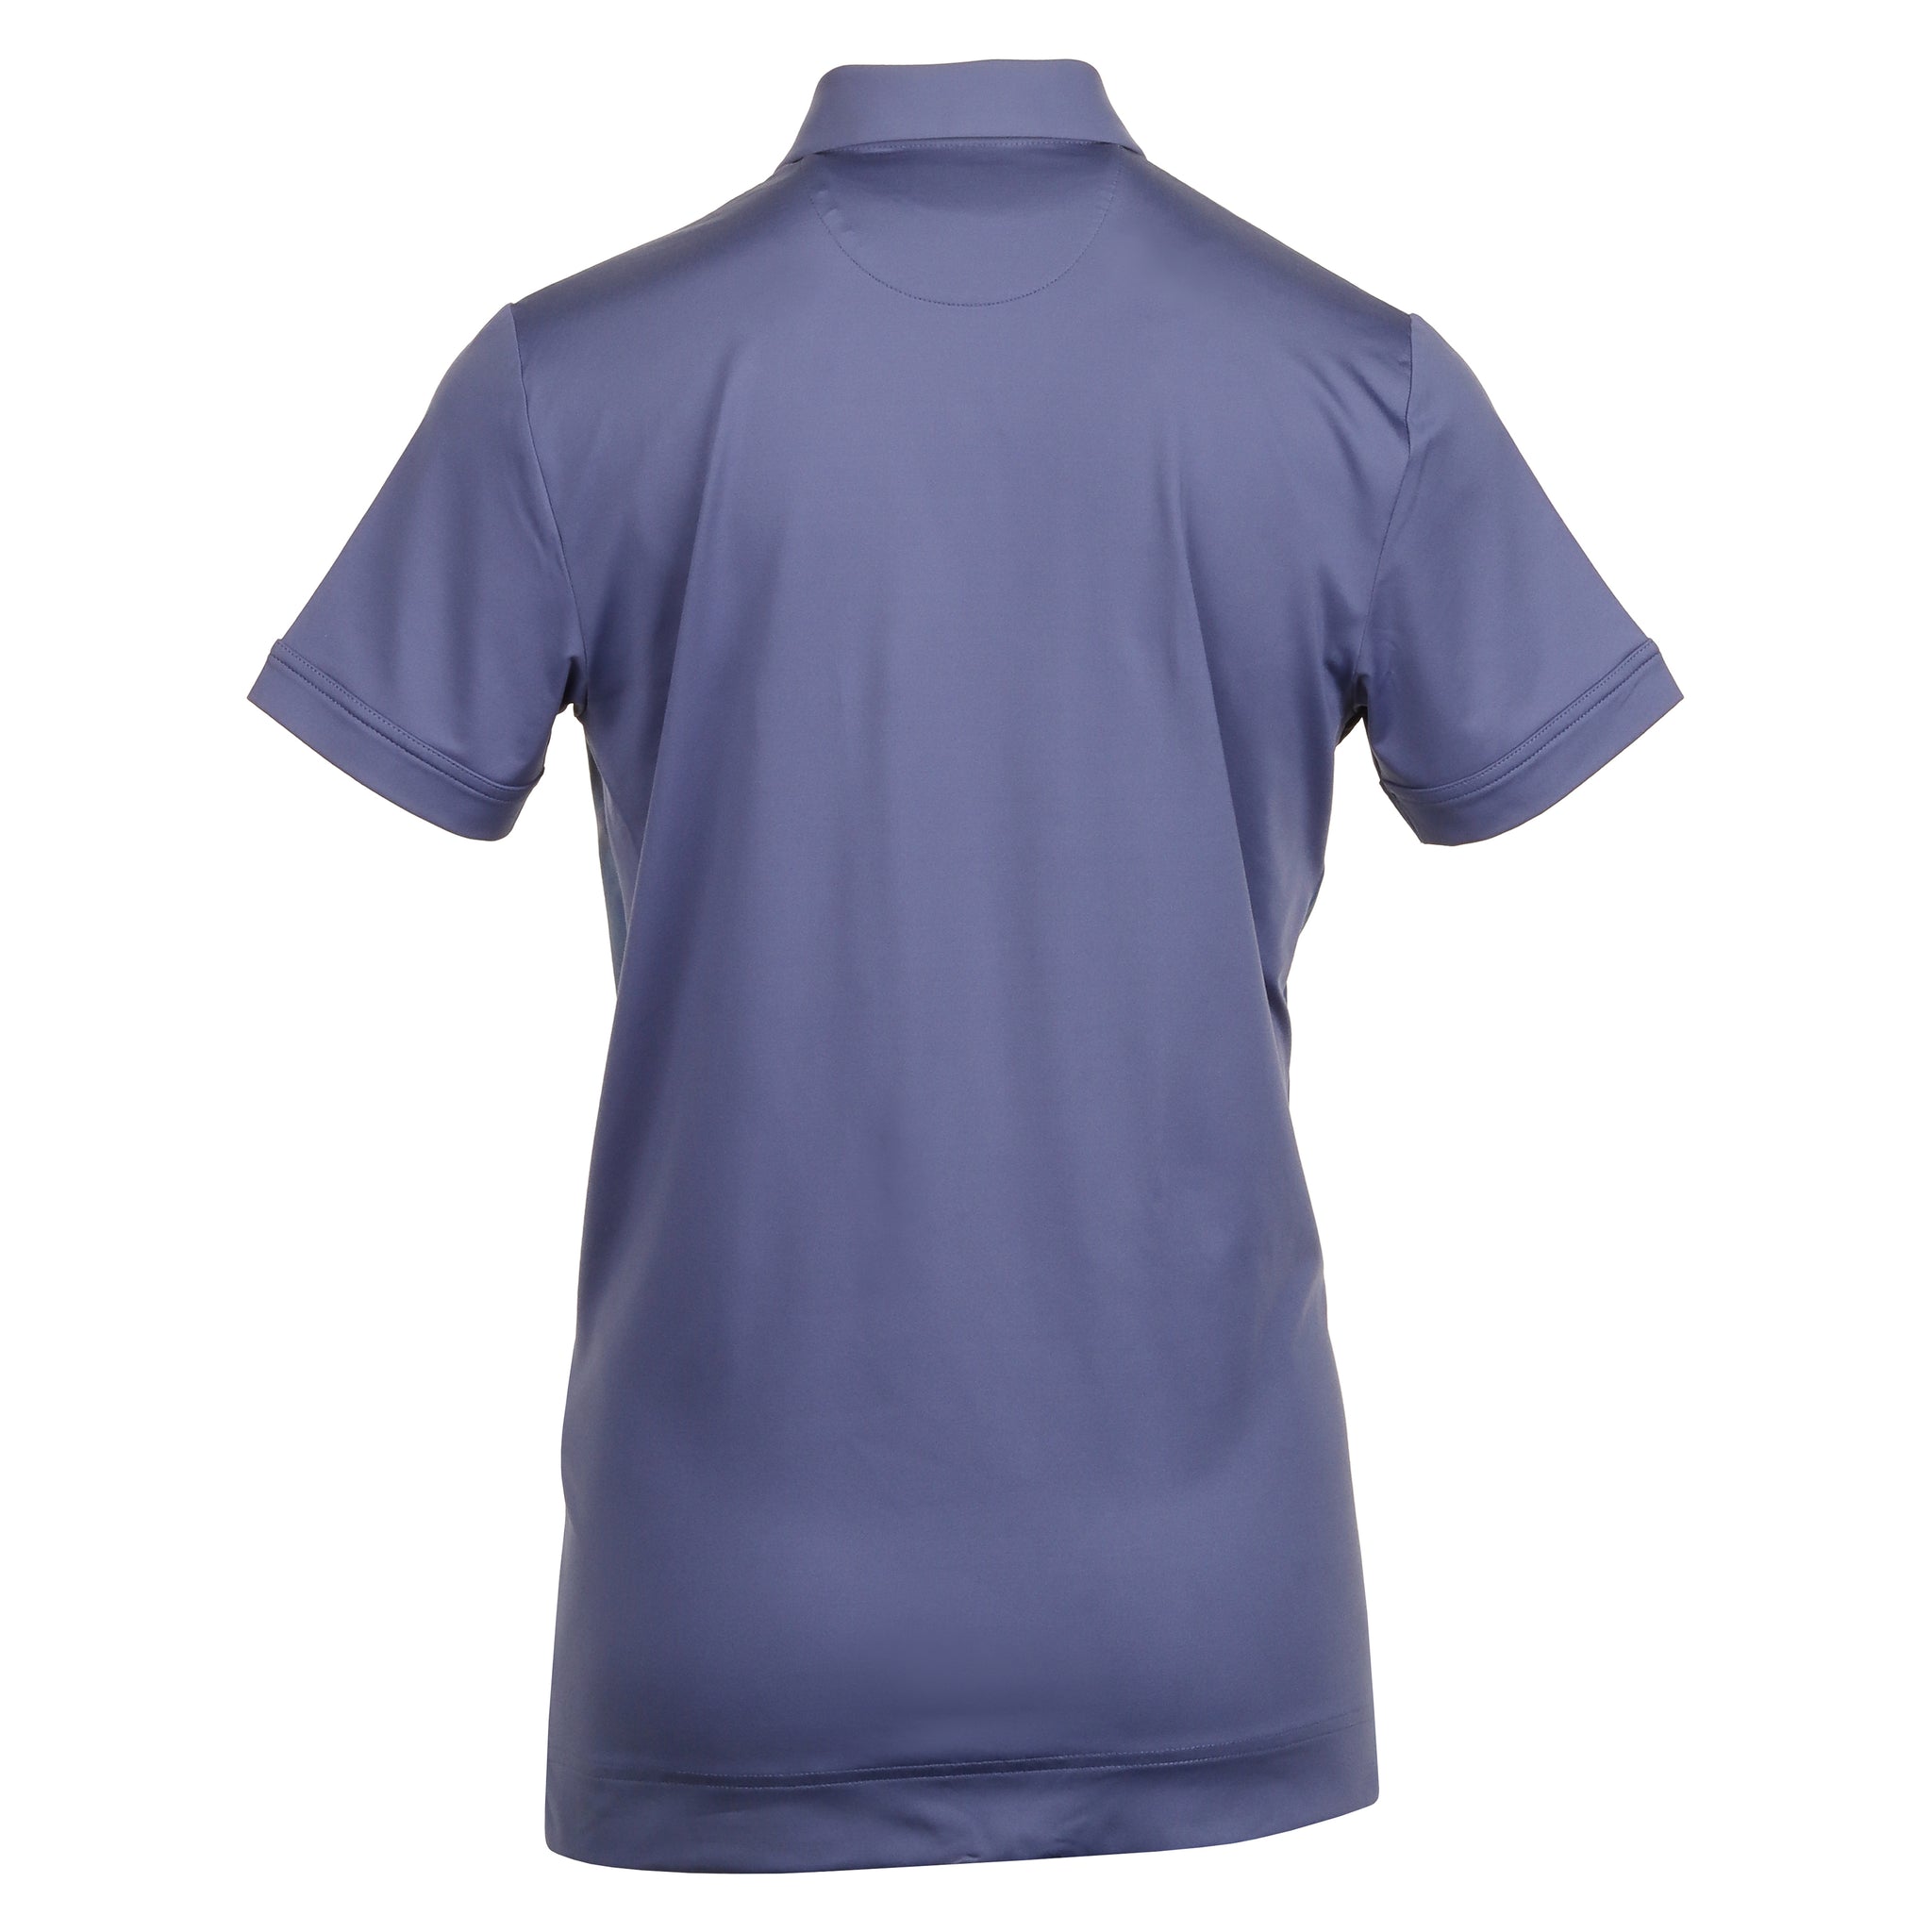 Callaway Golf X-Series Ombre 3D Chev Geo Shirt